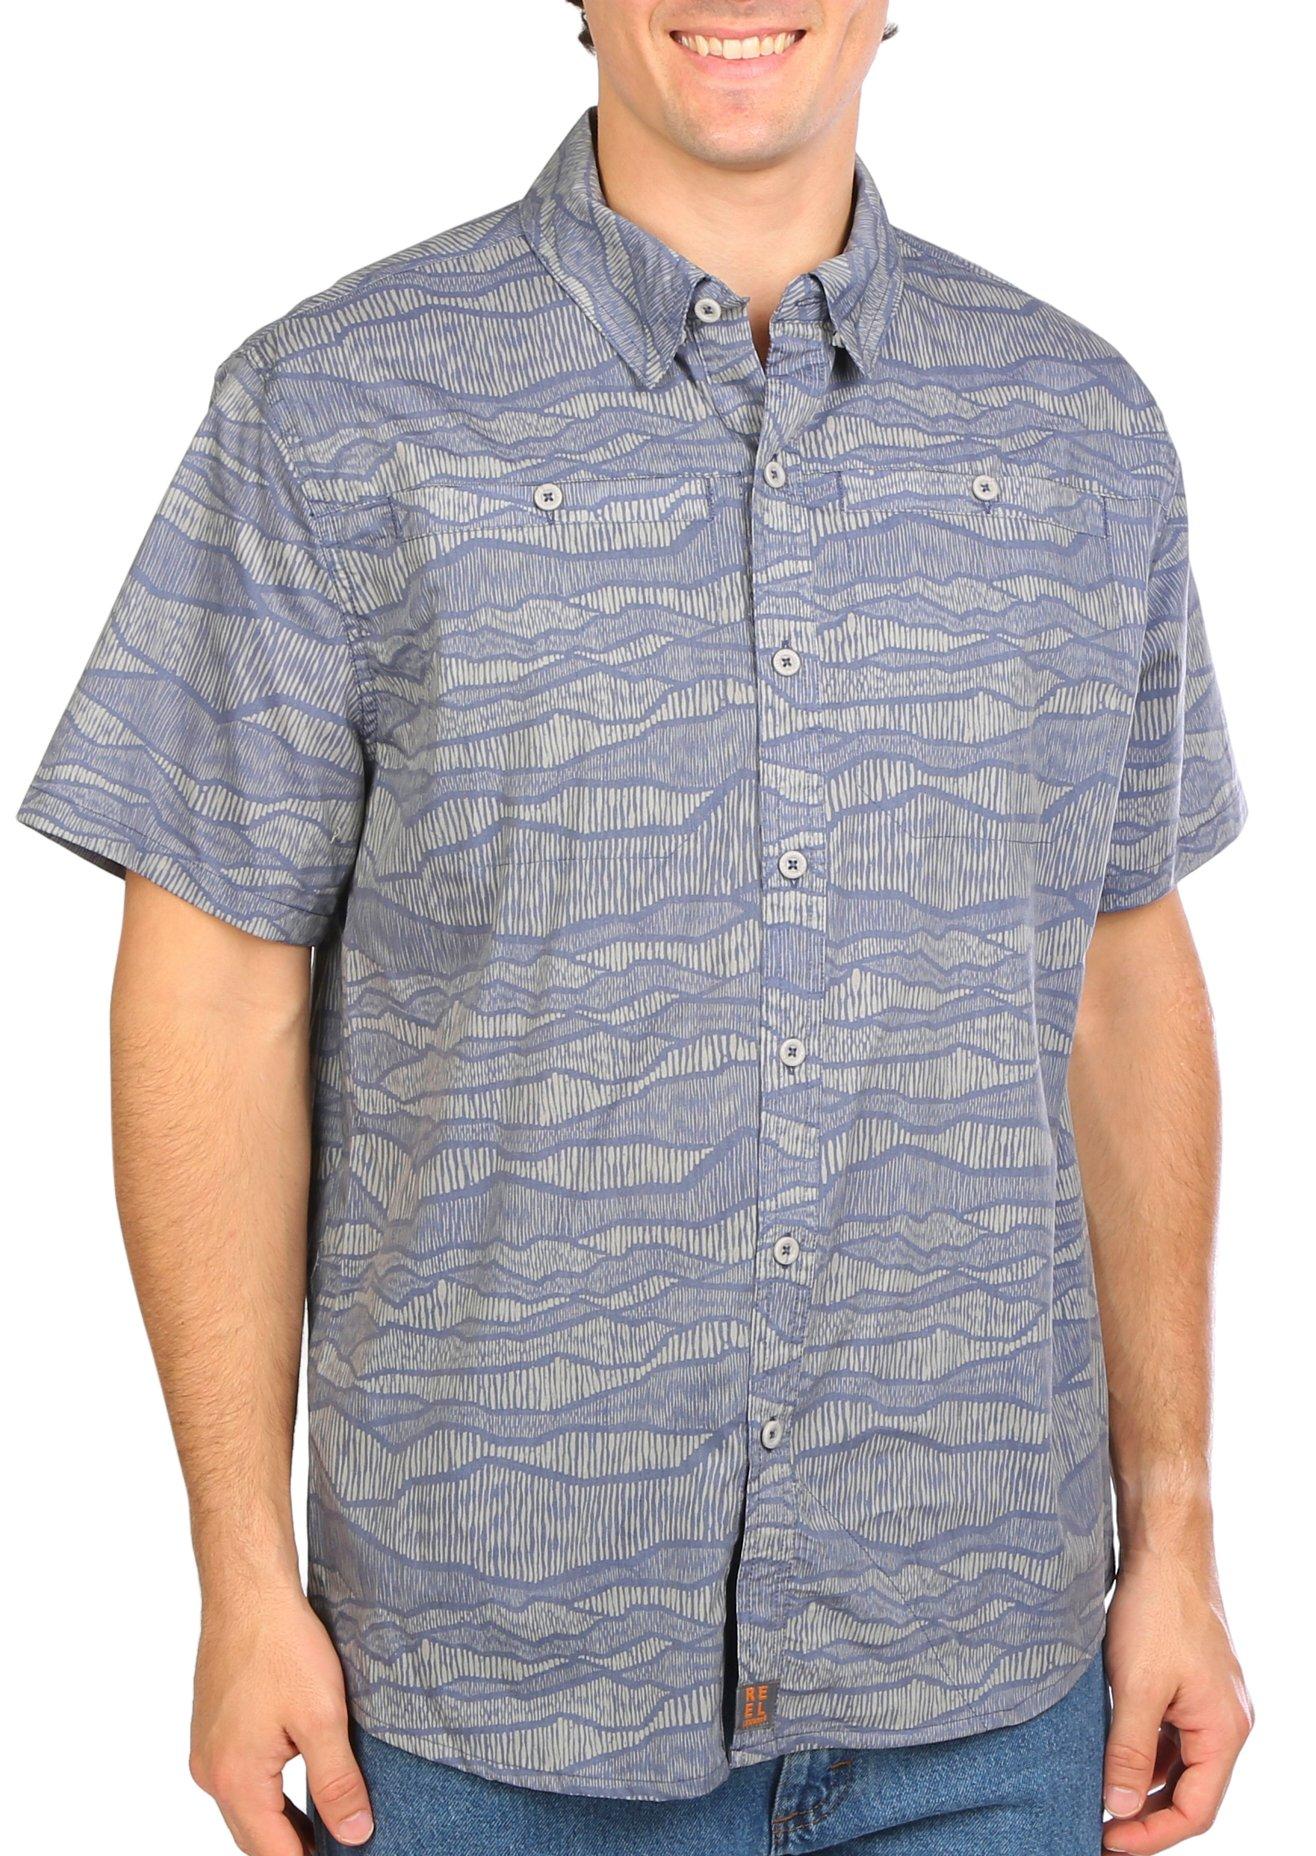 Reel Legends Mens Crackle Saltwater II Short Sleeve Shirt - Charcoal - Large